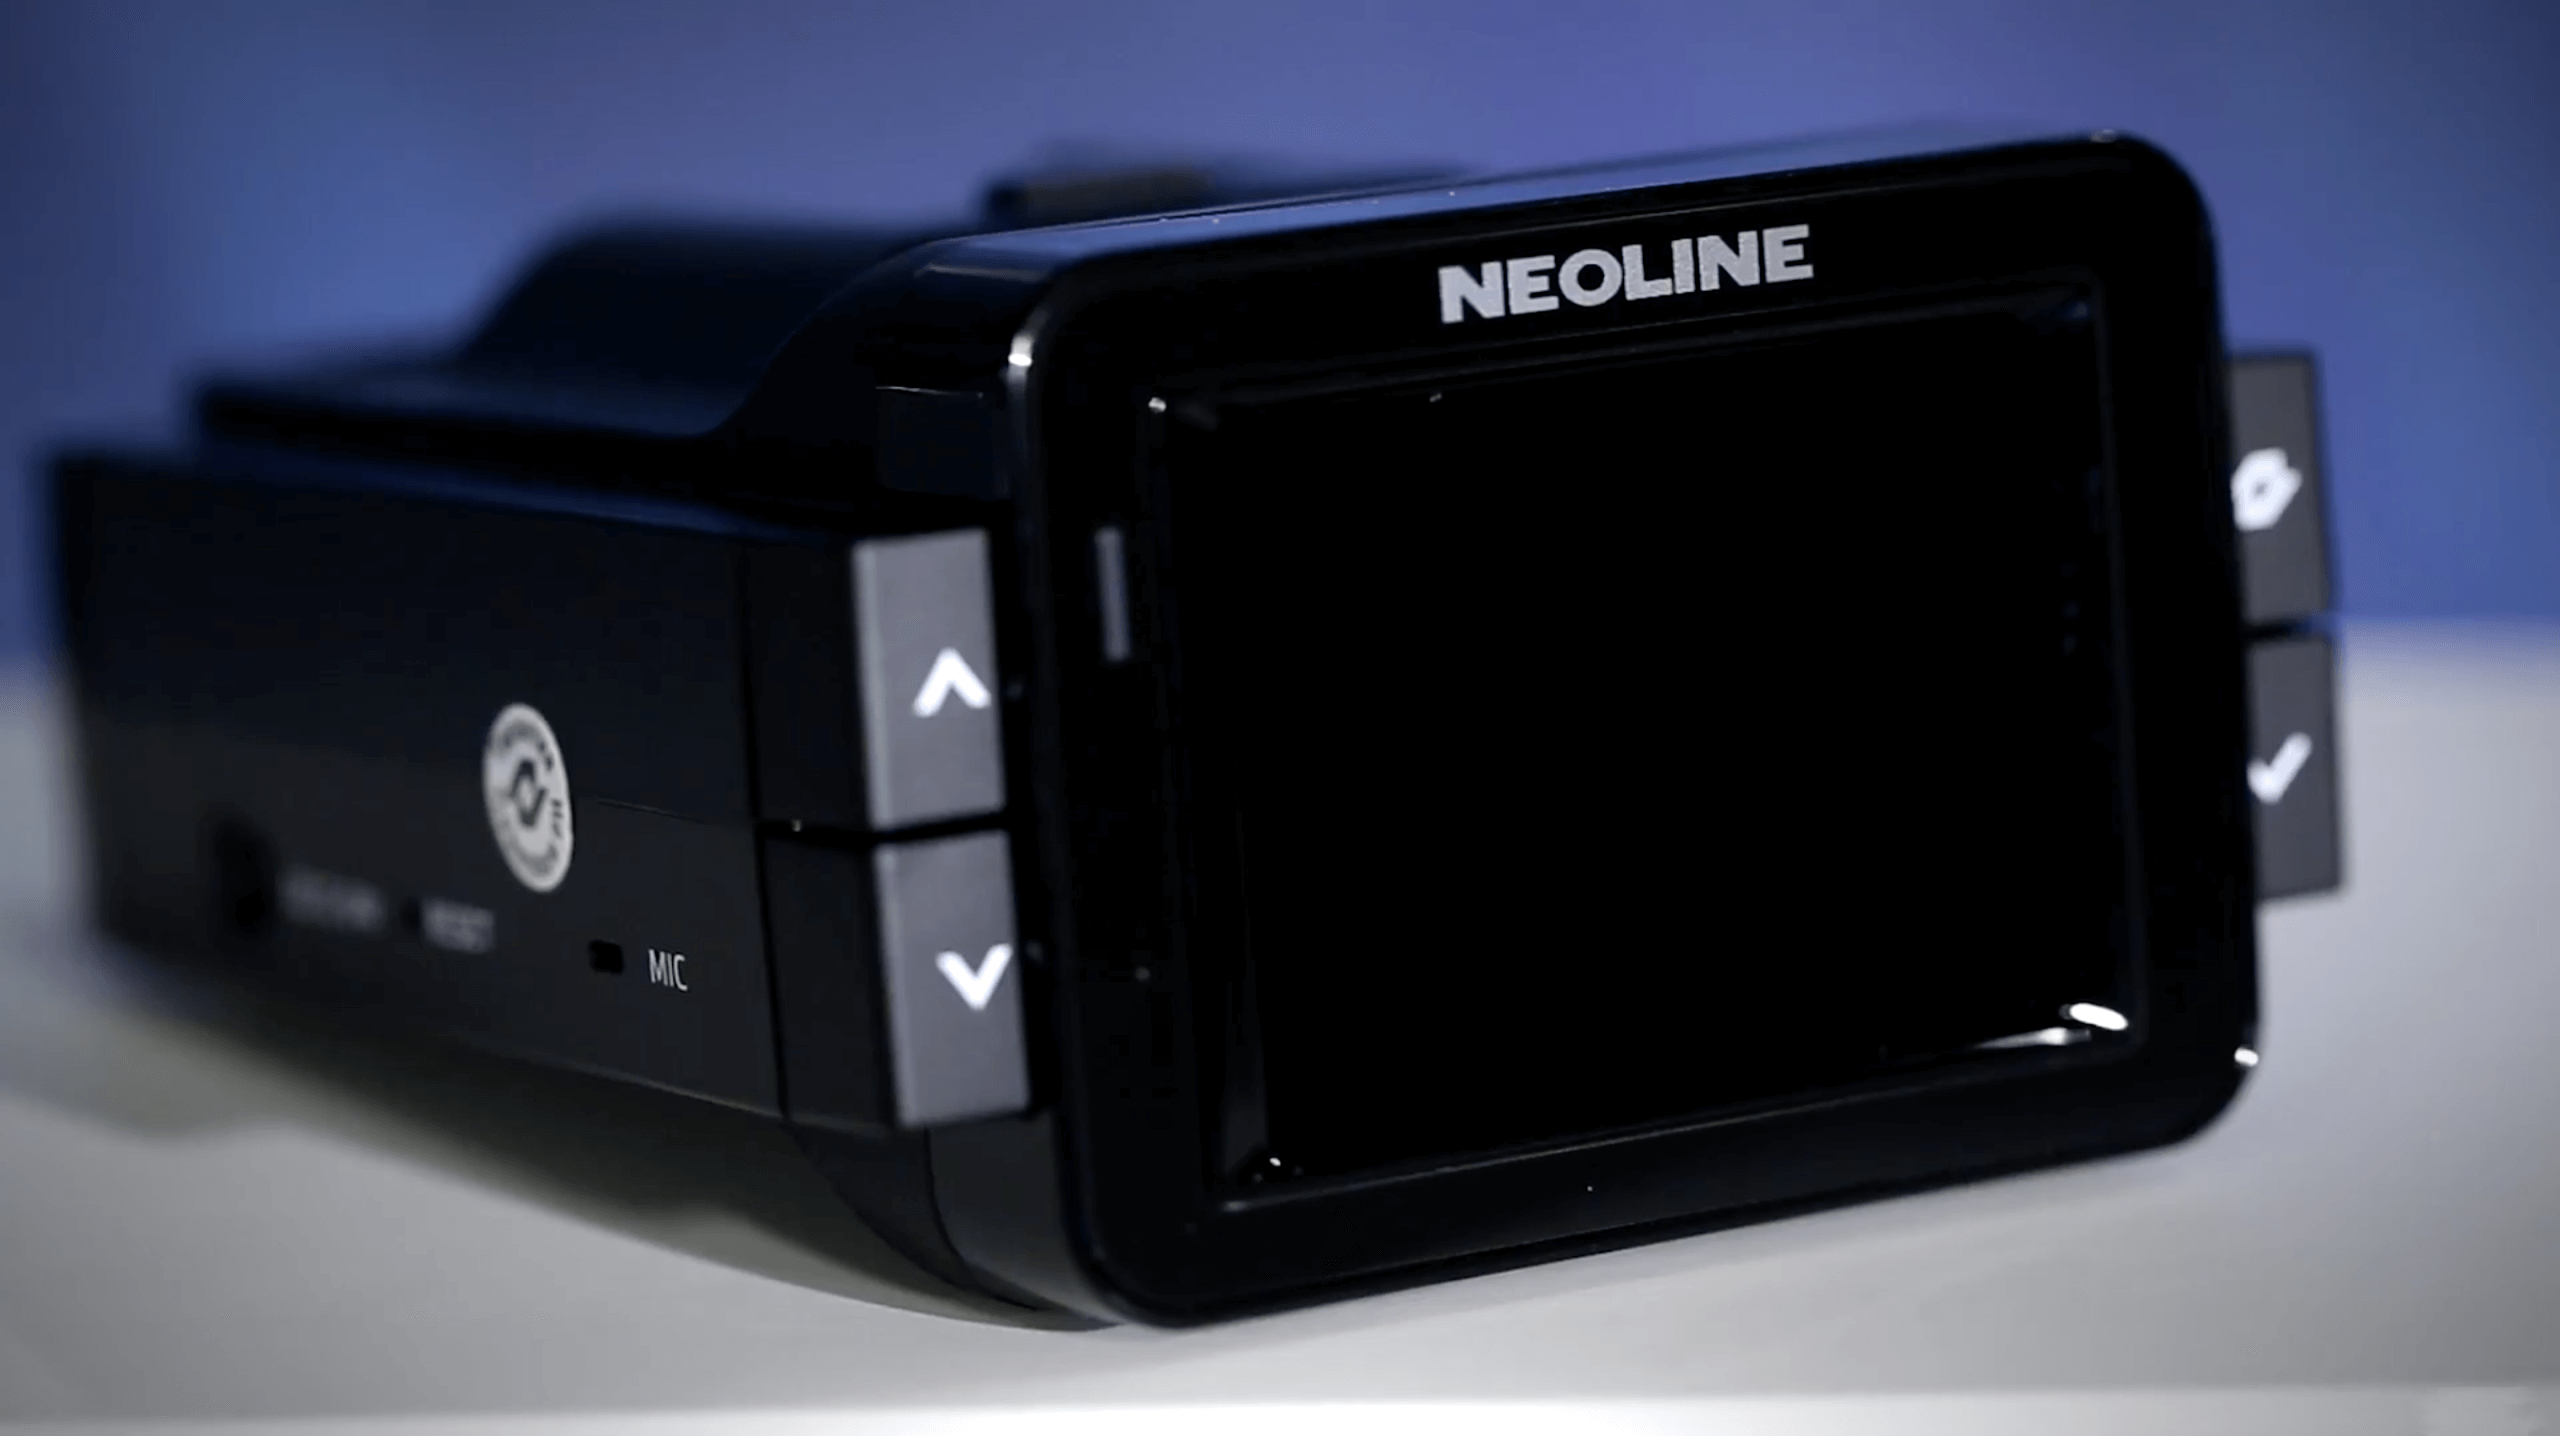 NEOLINE X-COP 9000C